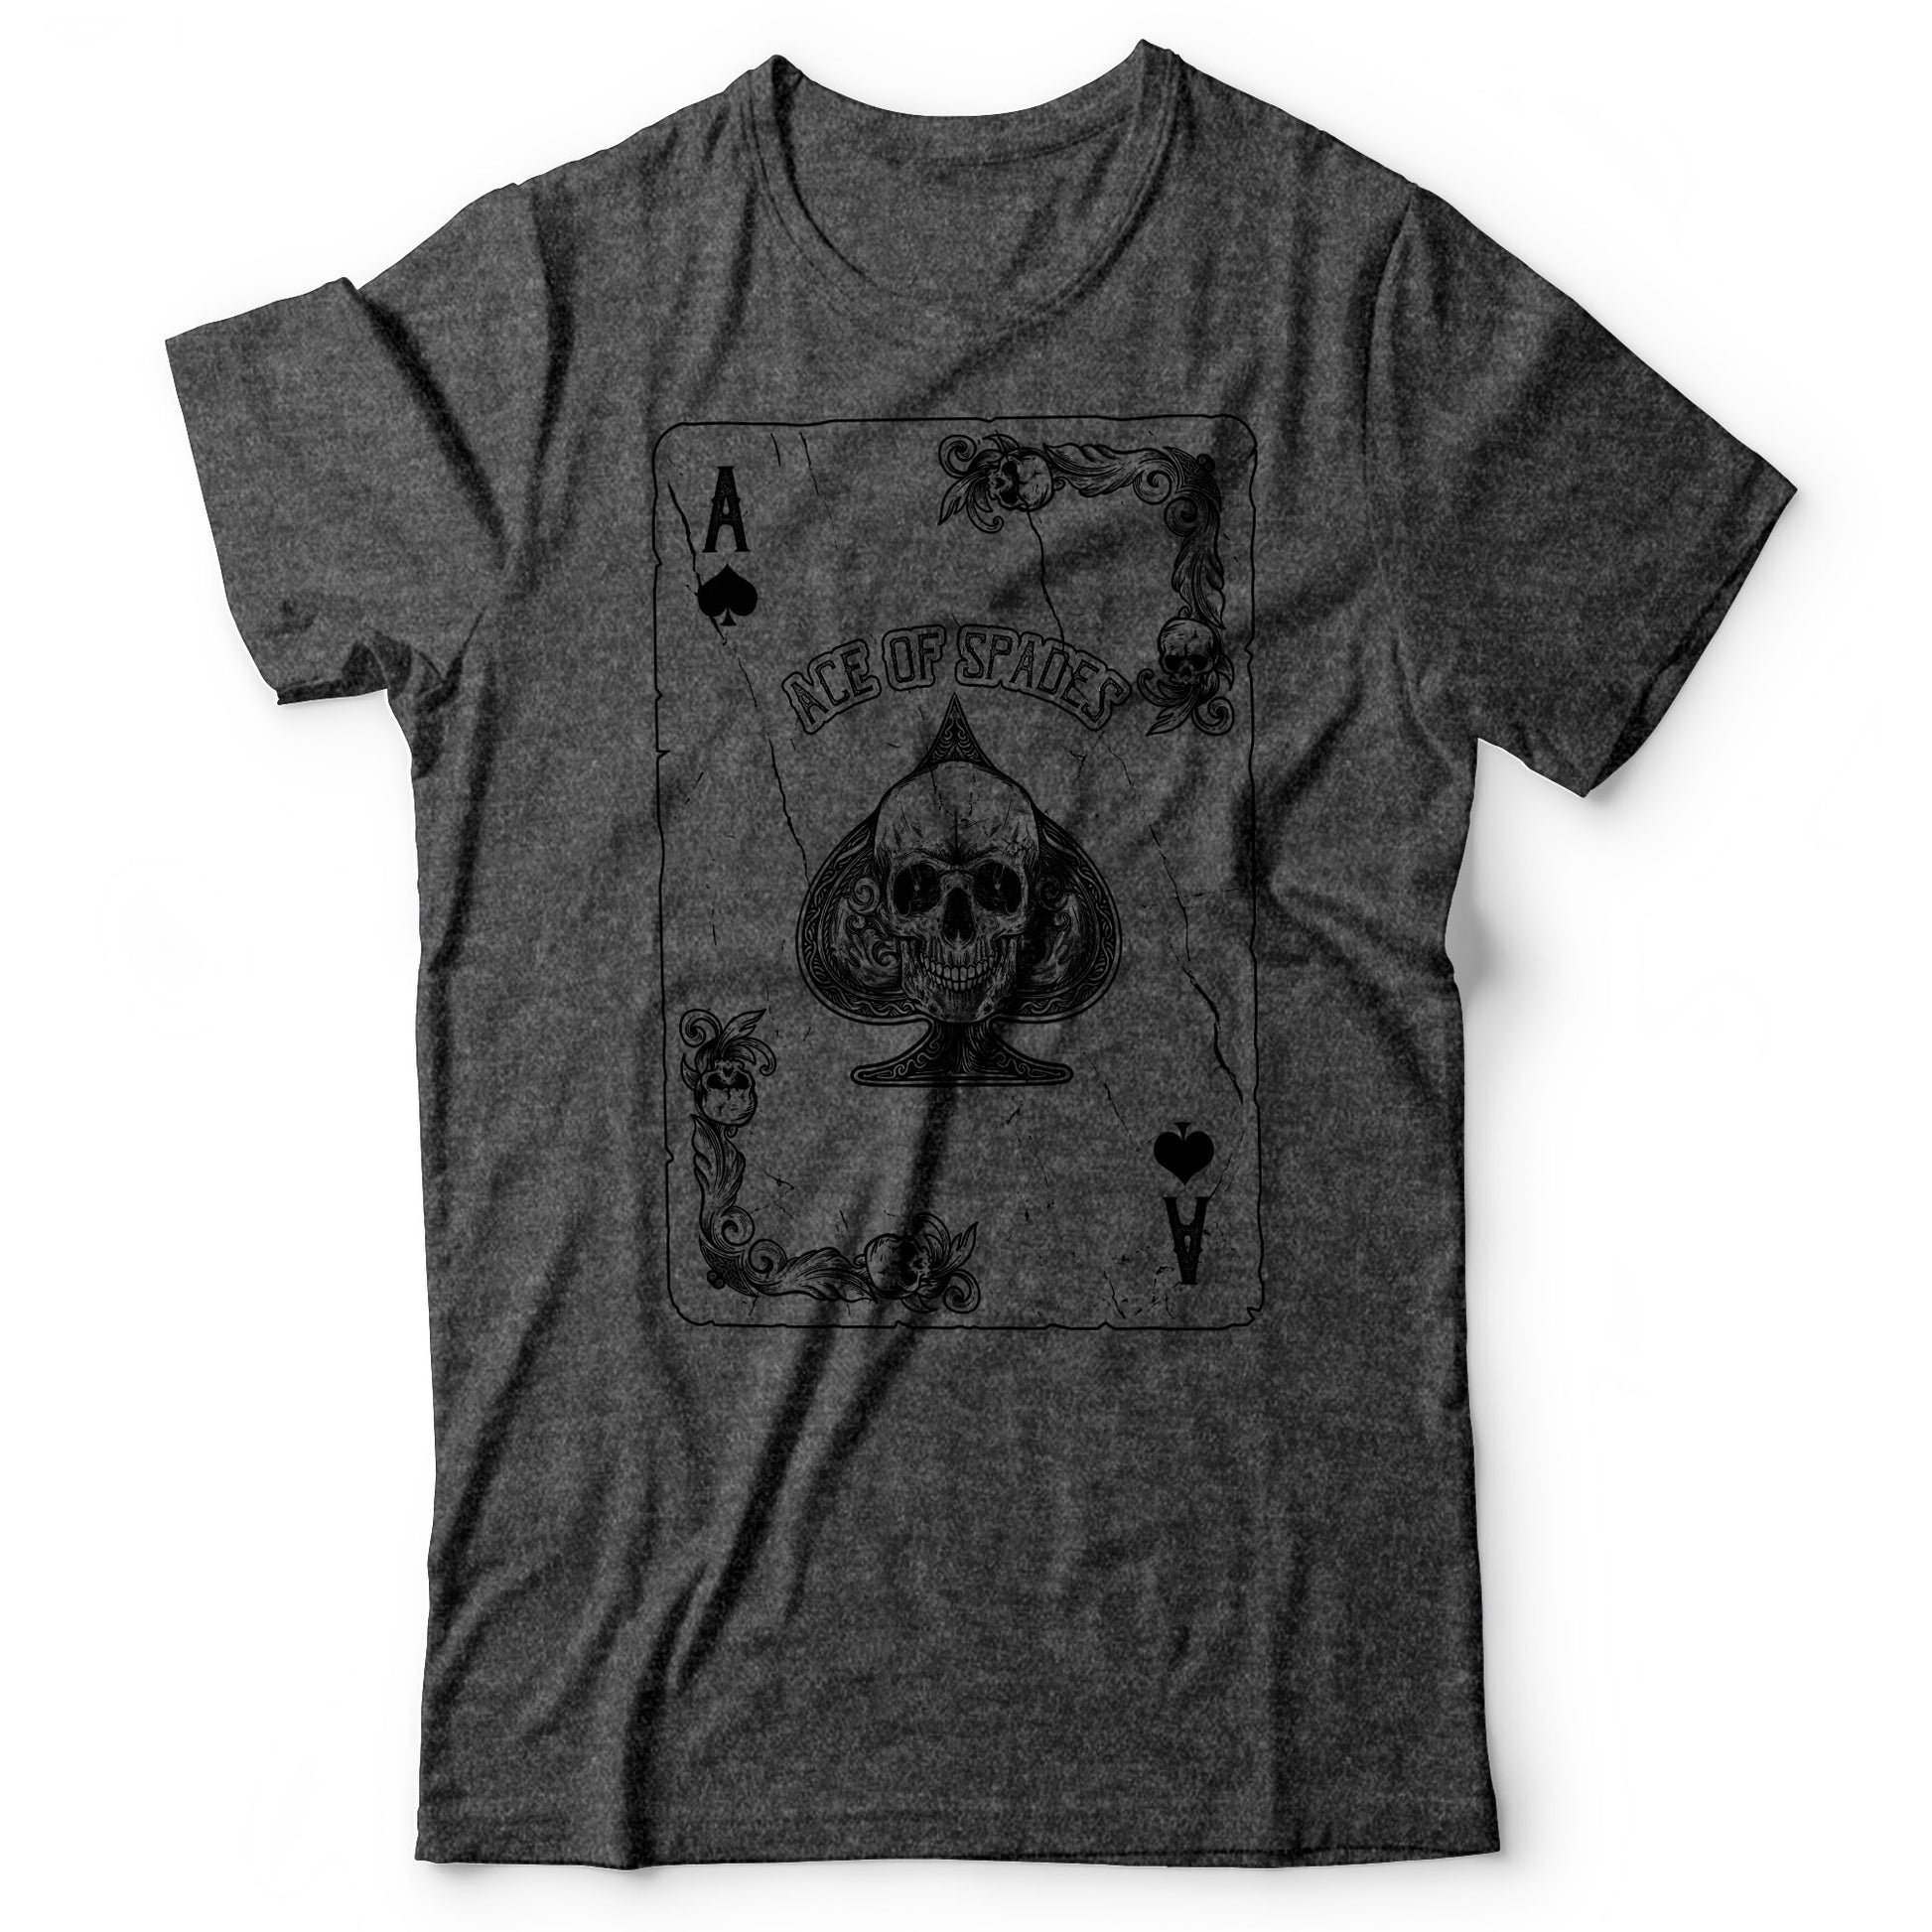 Motörhead - Ace of Spades - Men's T-shirt Dark Gray